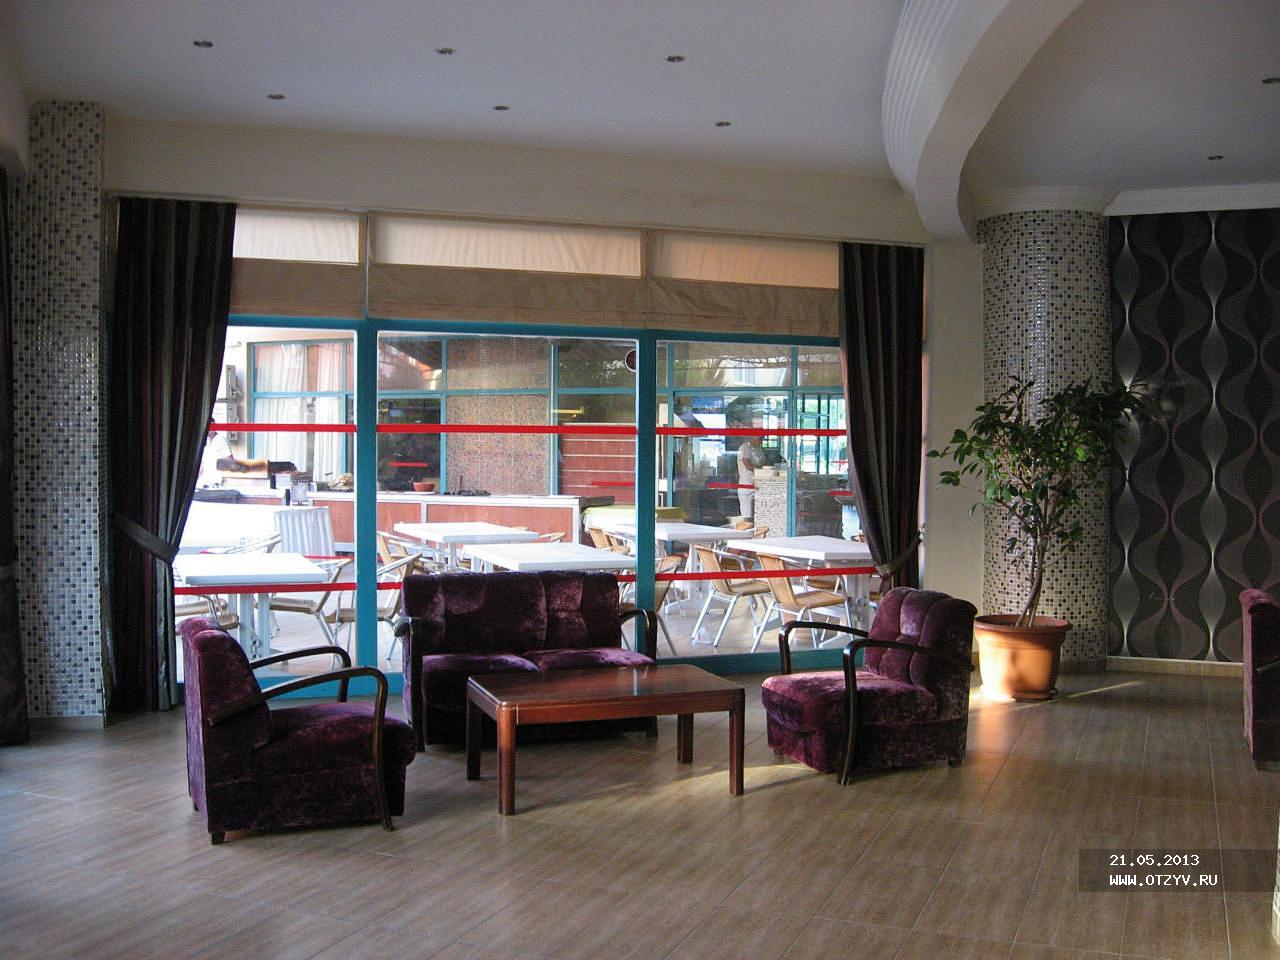 Avena Resort & Spa